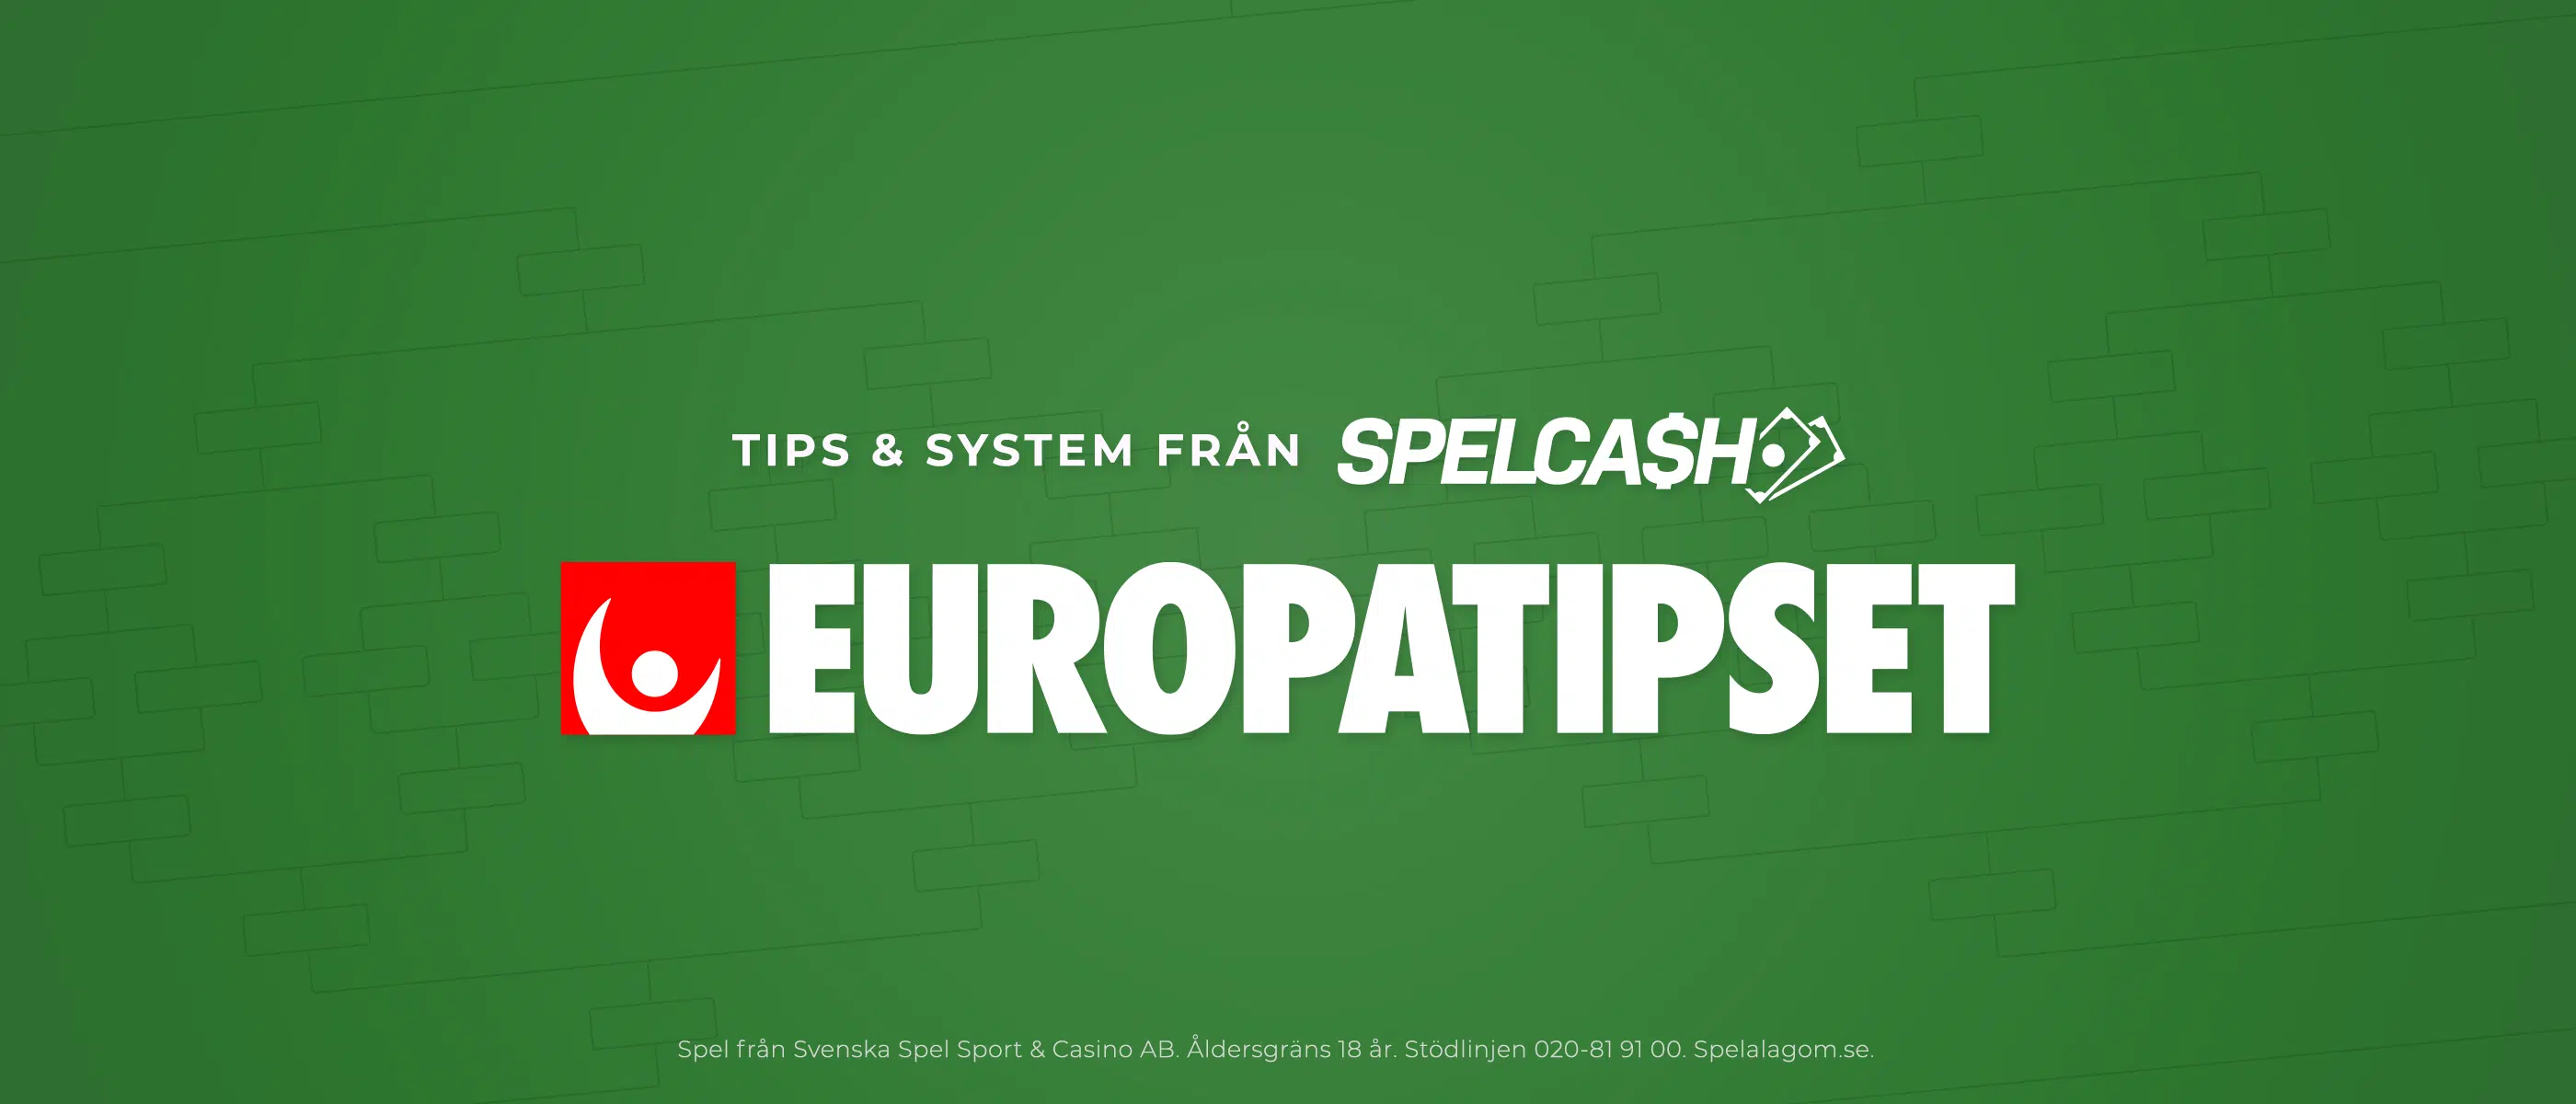 europatipset tips från Spelcash